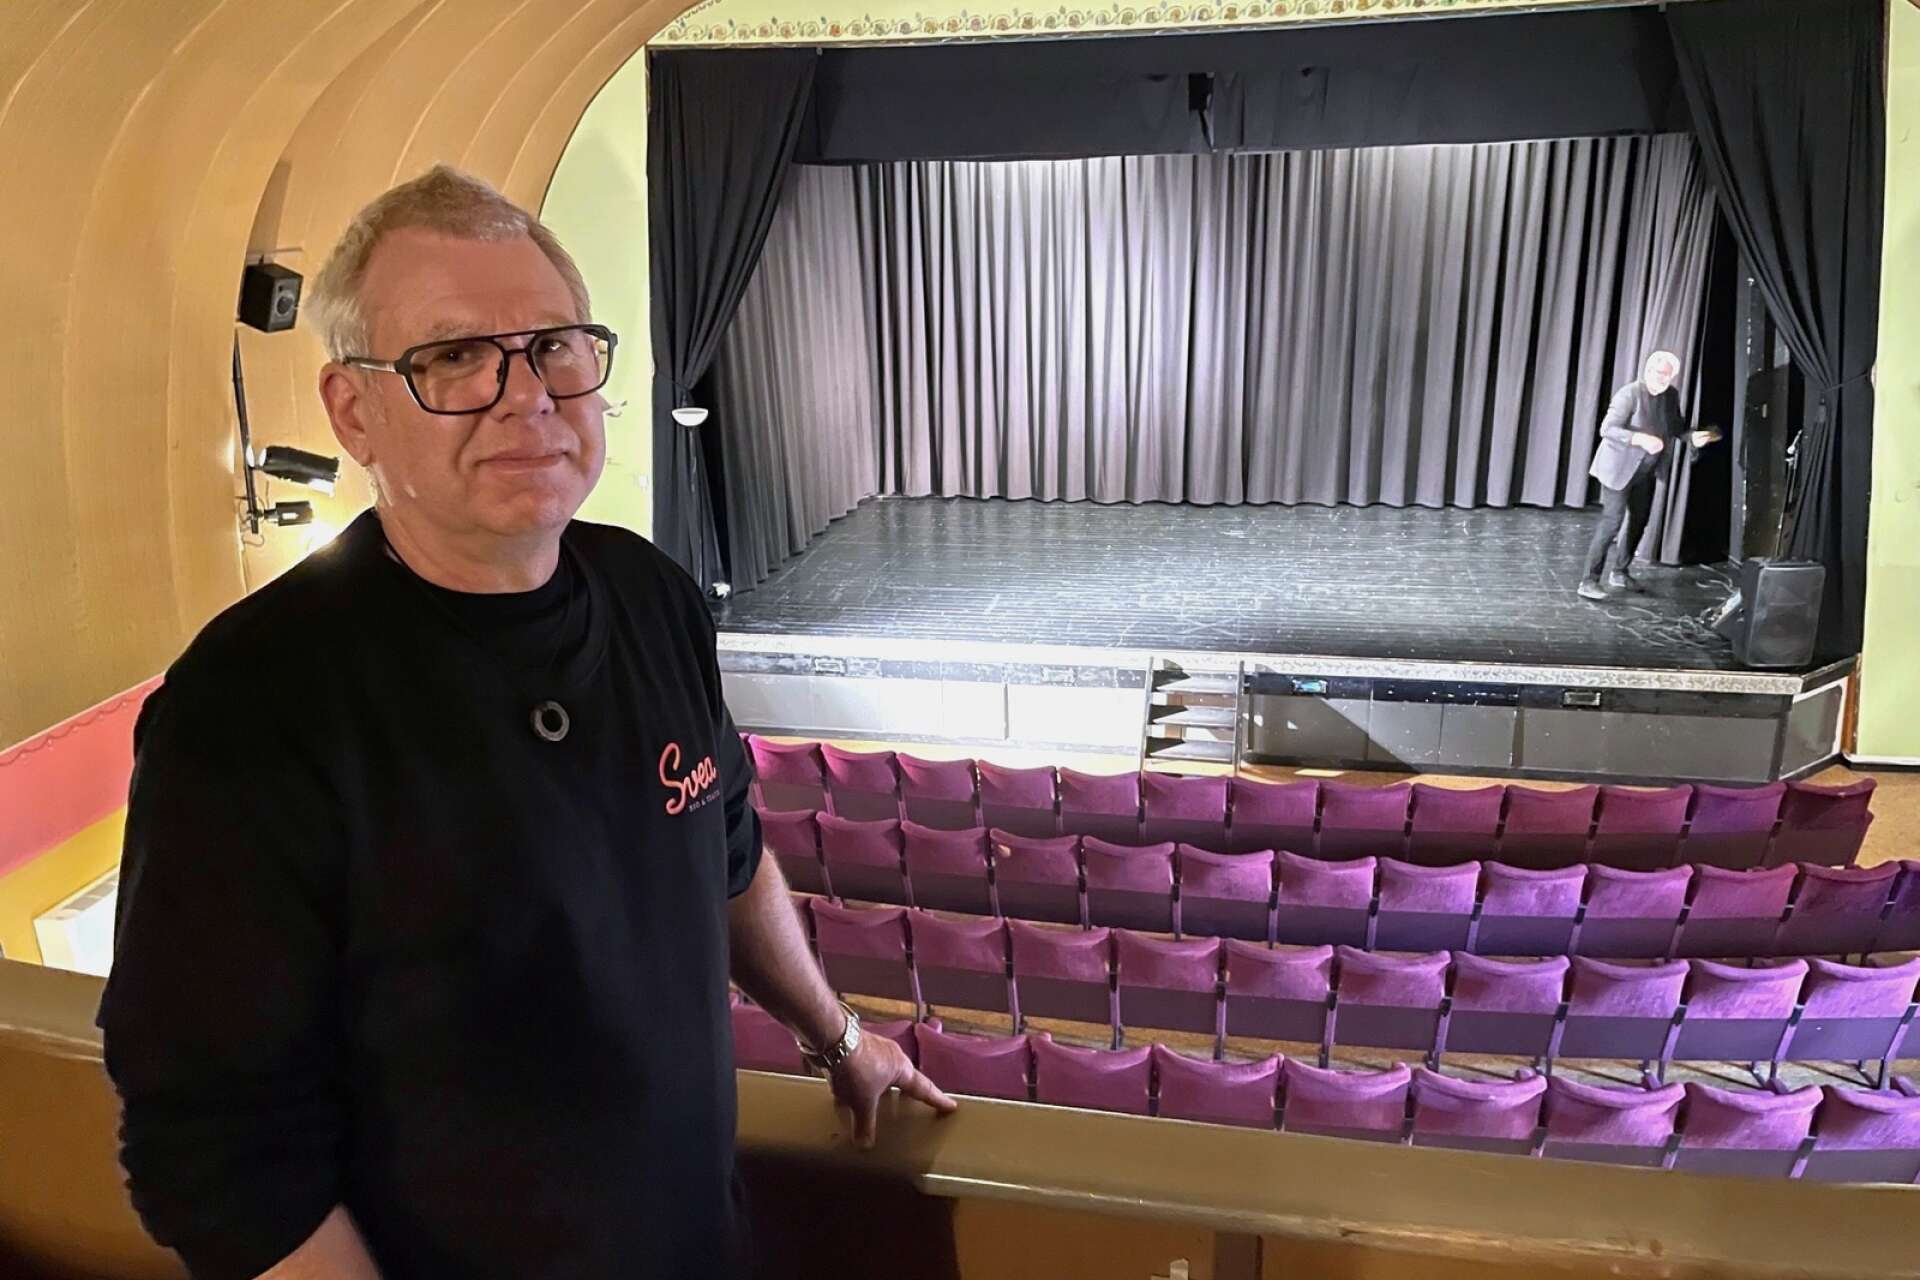 Svea bio och teater ska få en renässans som biografsalong. Bakom projektet står bland annat Håkan Jivesand, ordförande i IOGT-NTO som äger byggnaden.